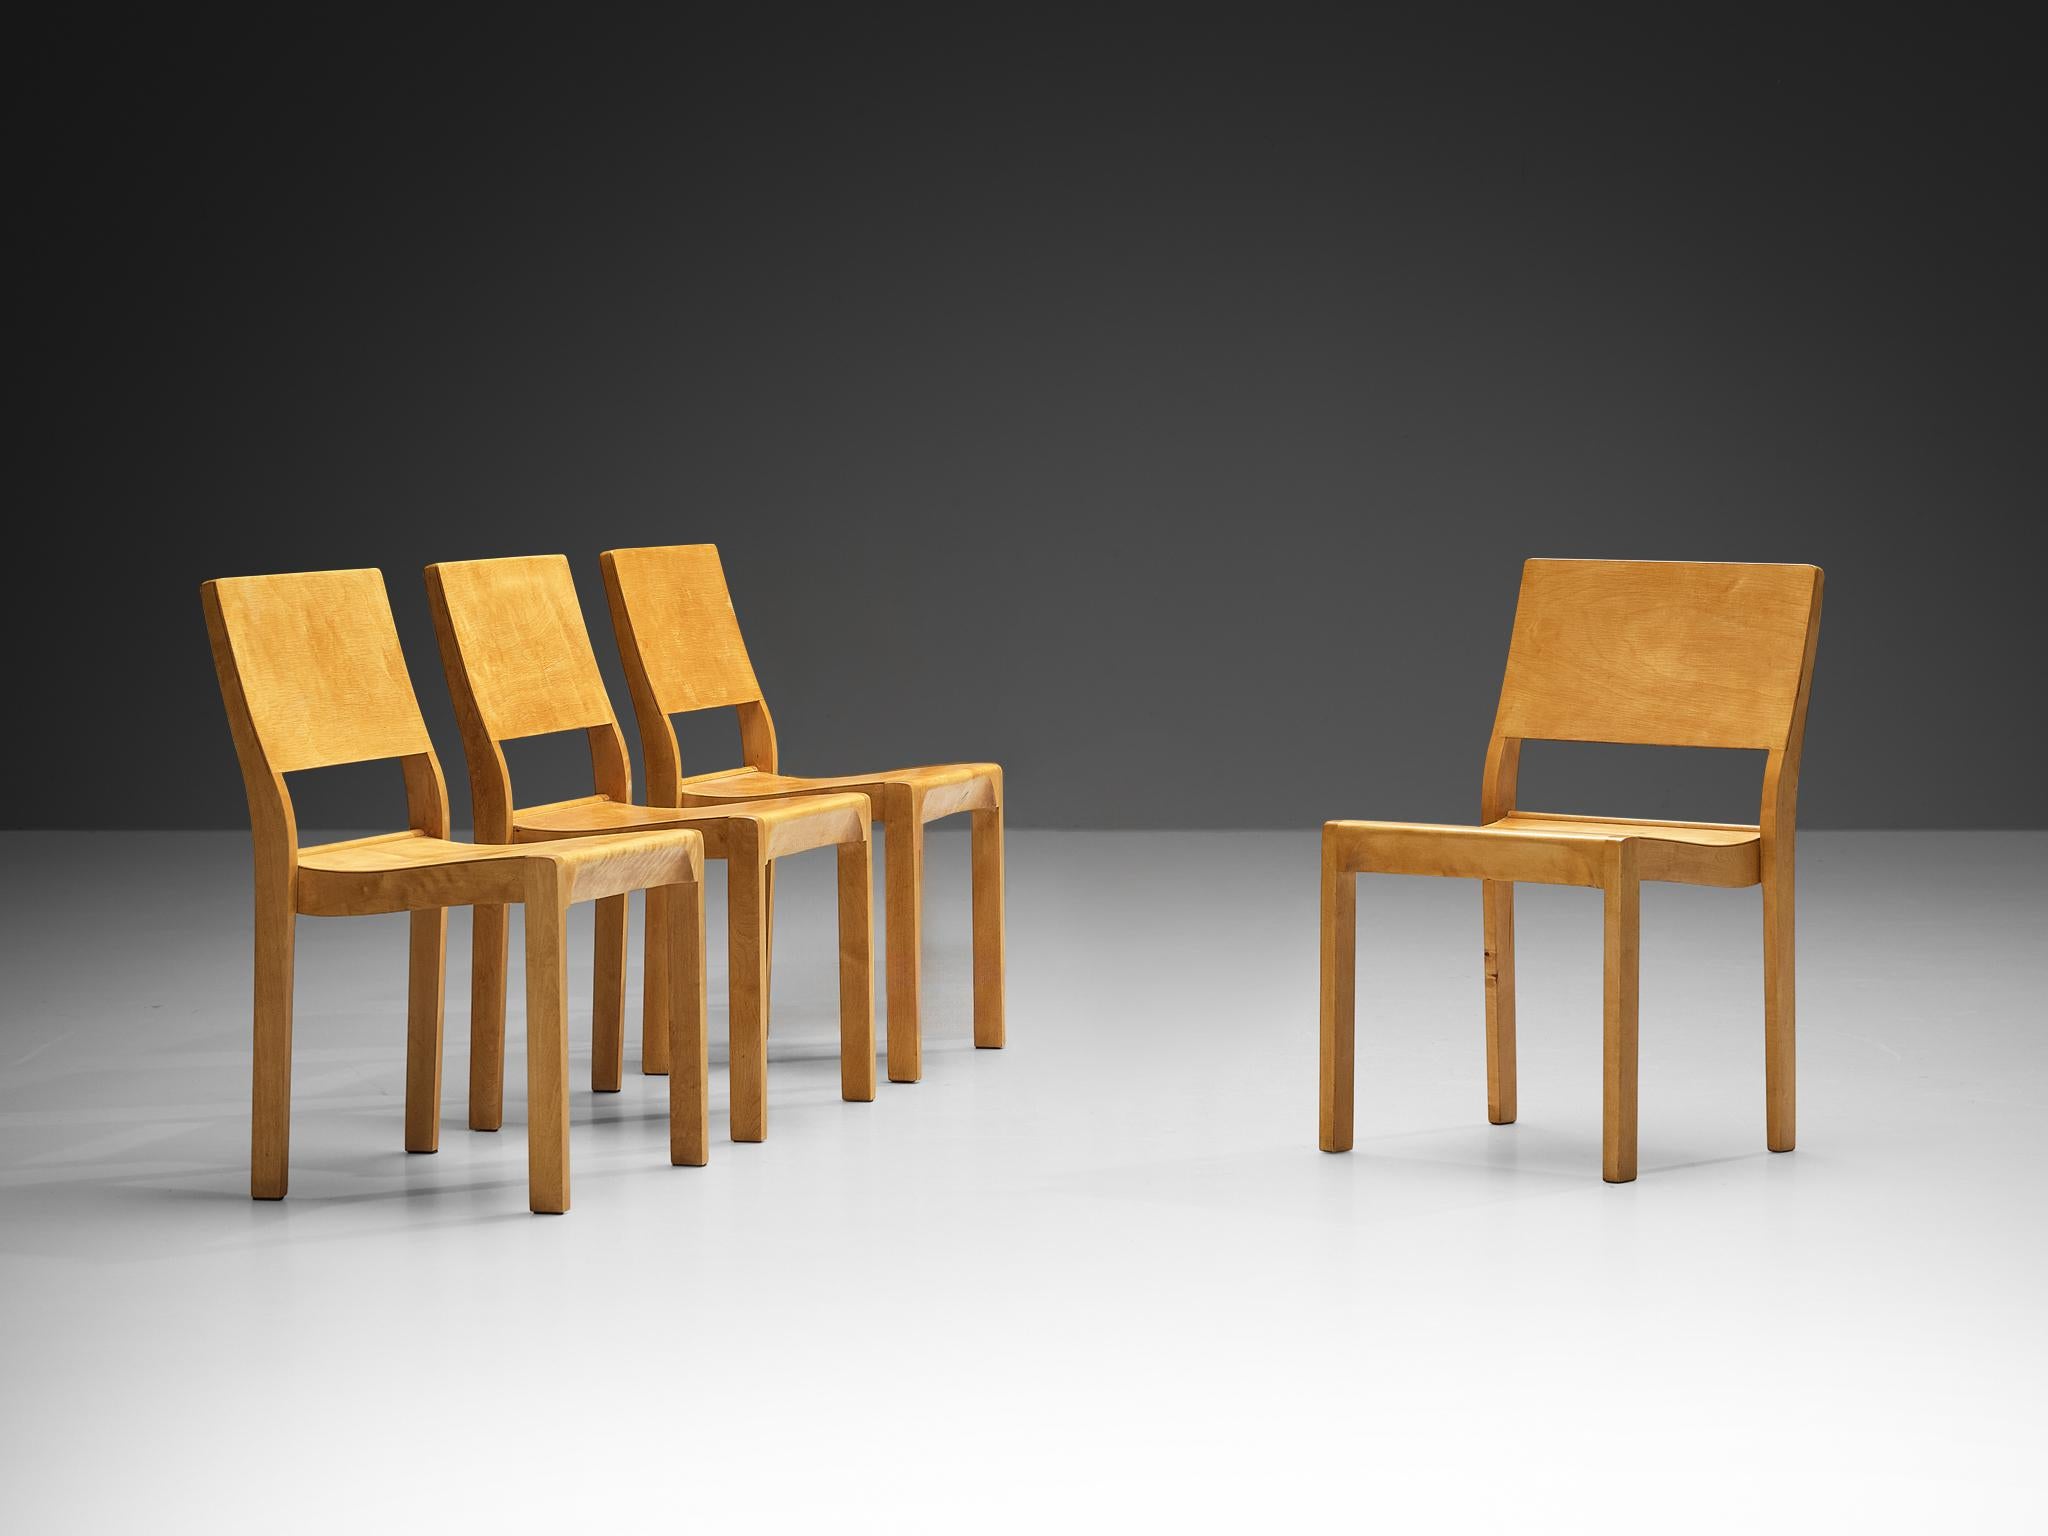 Alvar Aalto pour Artek, chaises de salle à manger, modèle '11', bouleau, contreplaqué, Finlande, design 1929

De jolies chaises empilables conçues par Alvar Aalto en 1929. Cet ensemble est fabriqué par Artek Finland. Ces chaises sont fabriquées dans